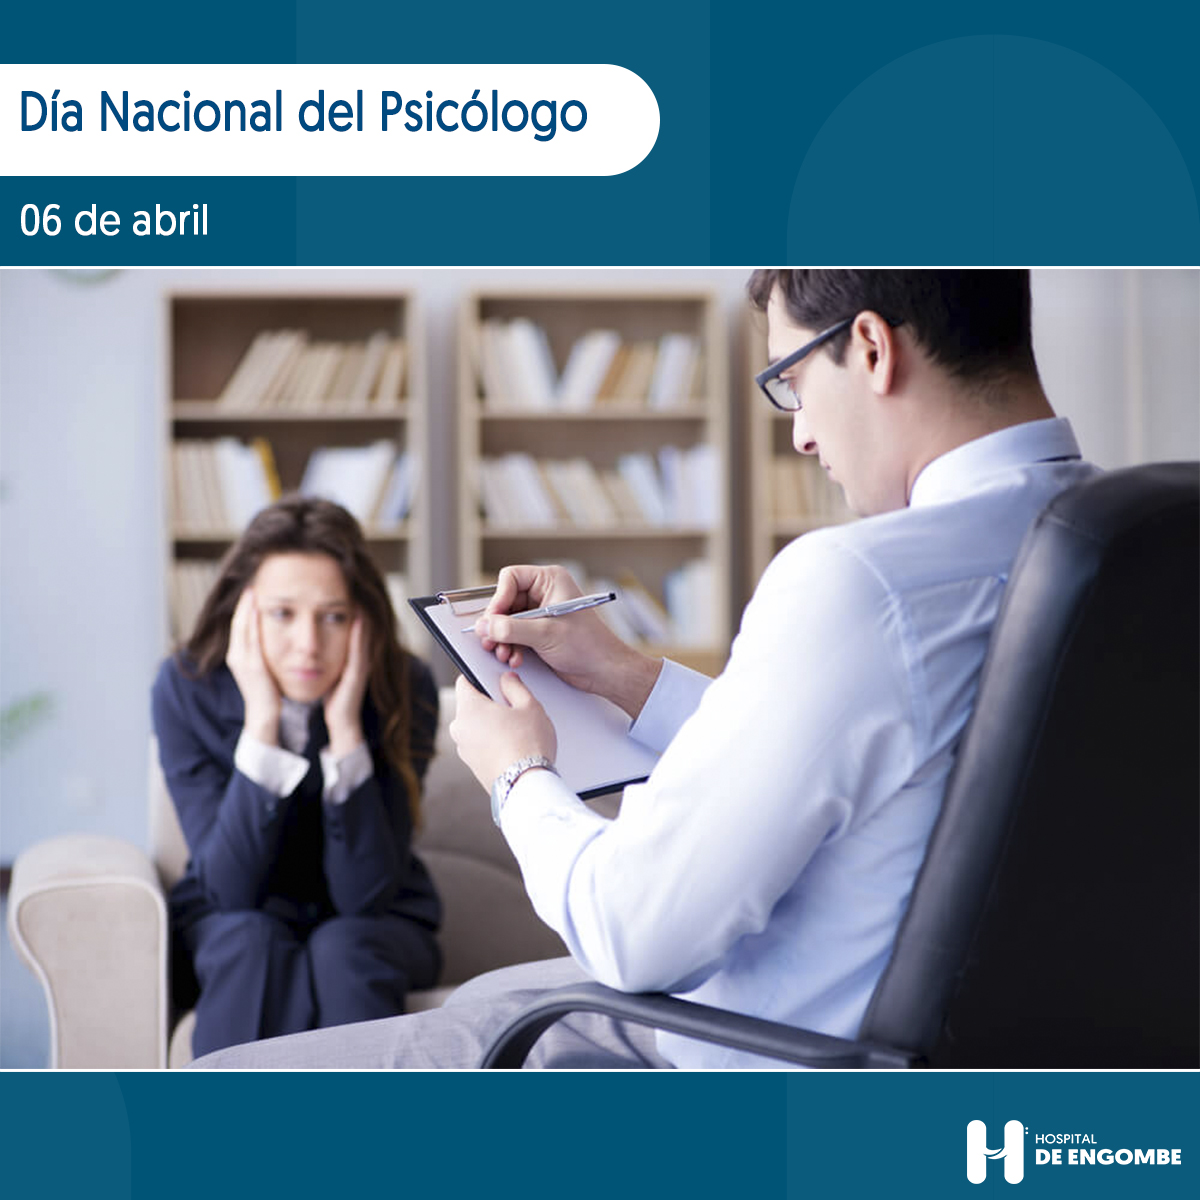 You are currently viewing 06 de abril, Día Nacional del Psicólogo